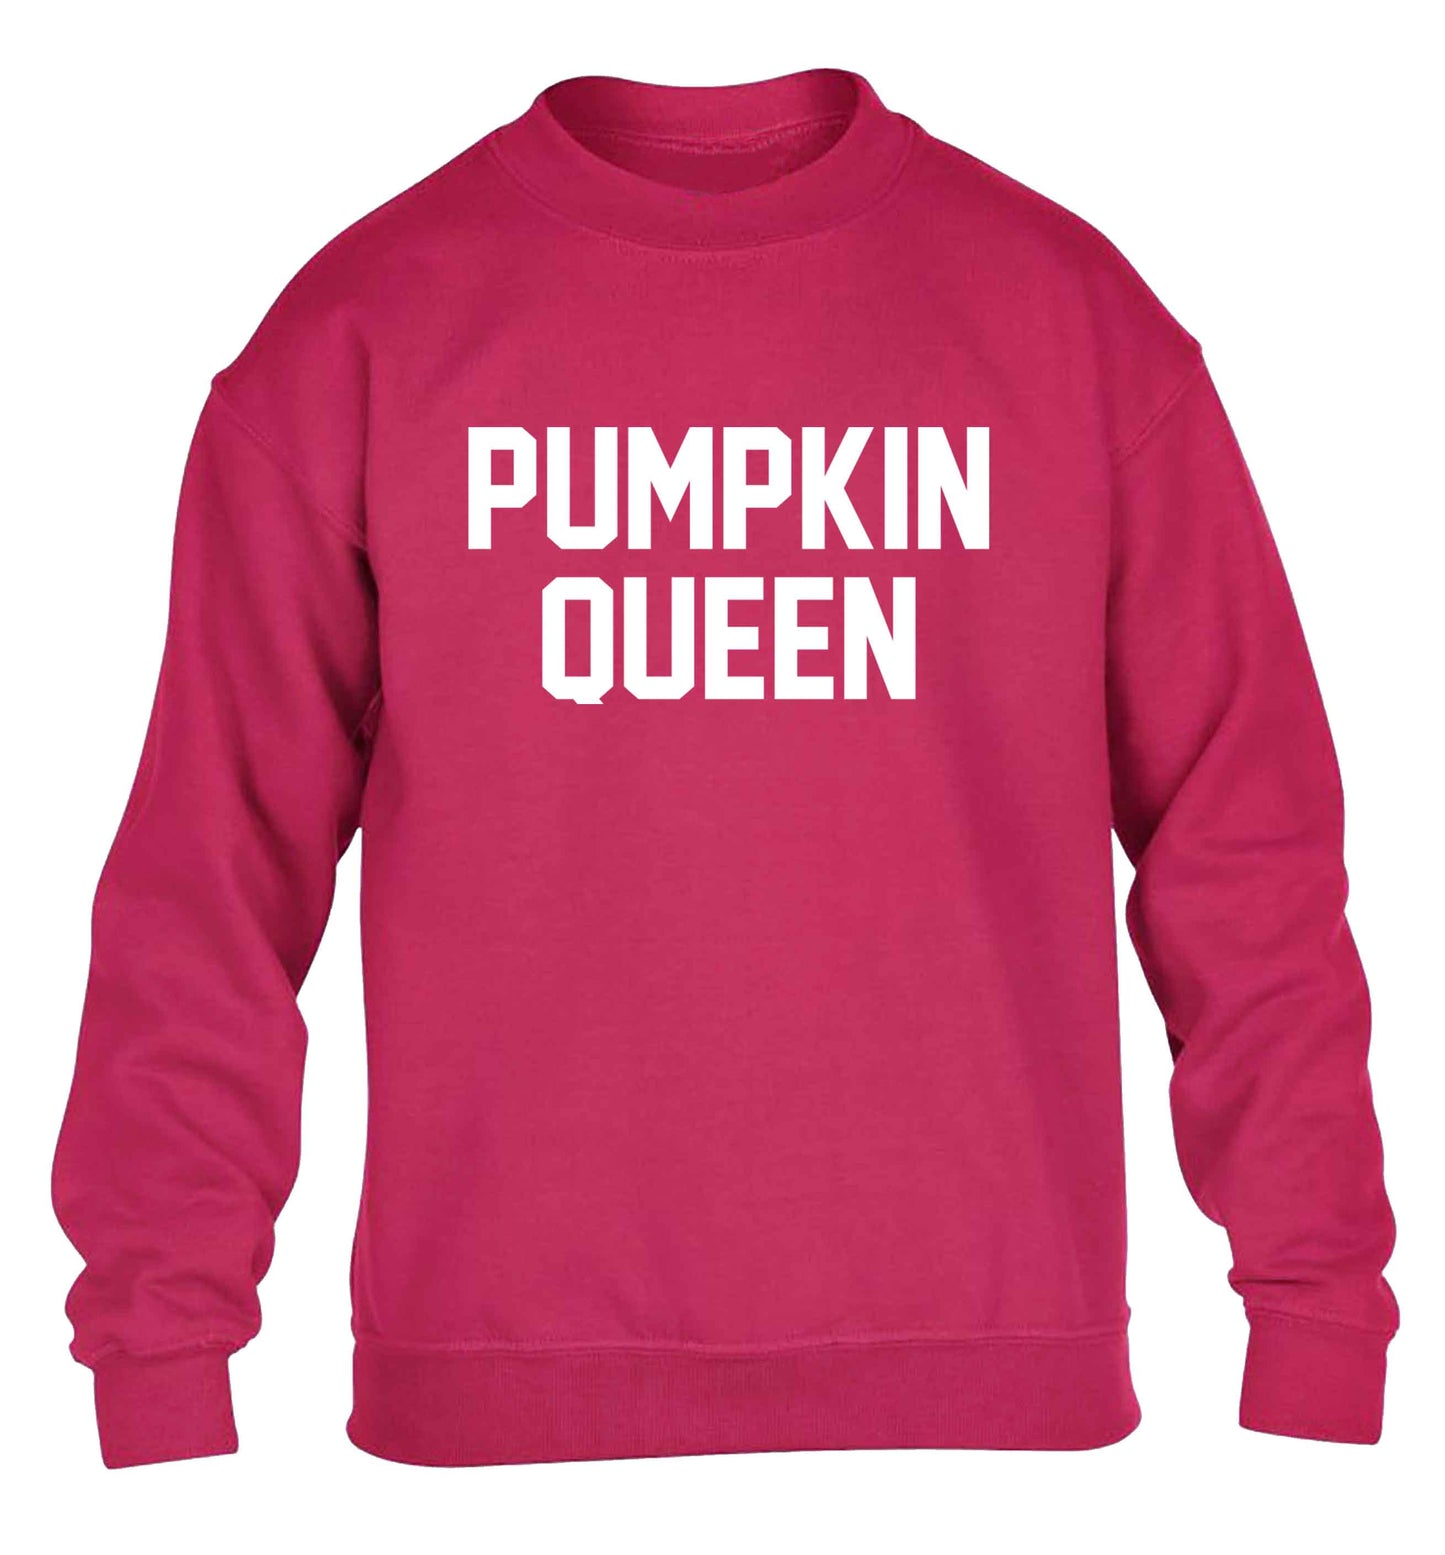 Pumpkin Queen children's pink sweater 12-13 Years